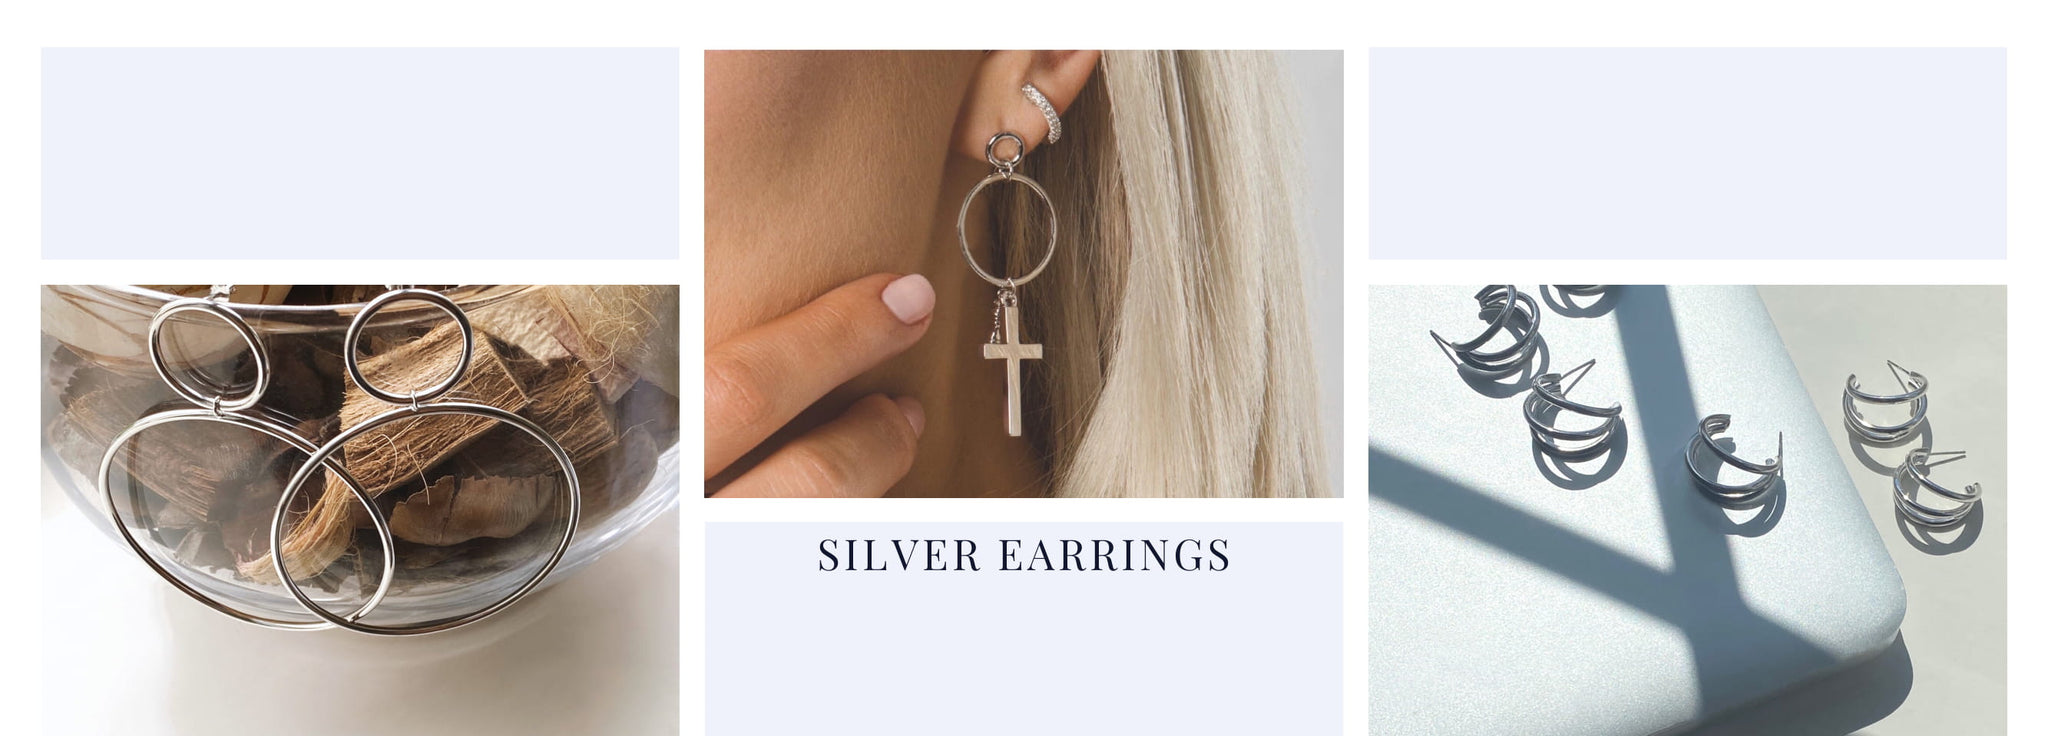 All Silver Earrings by Bella Mayford